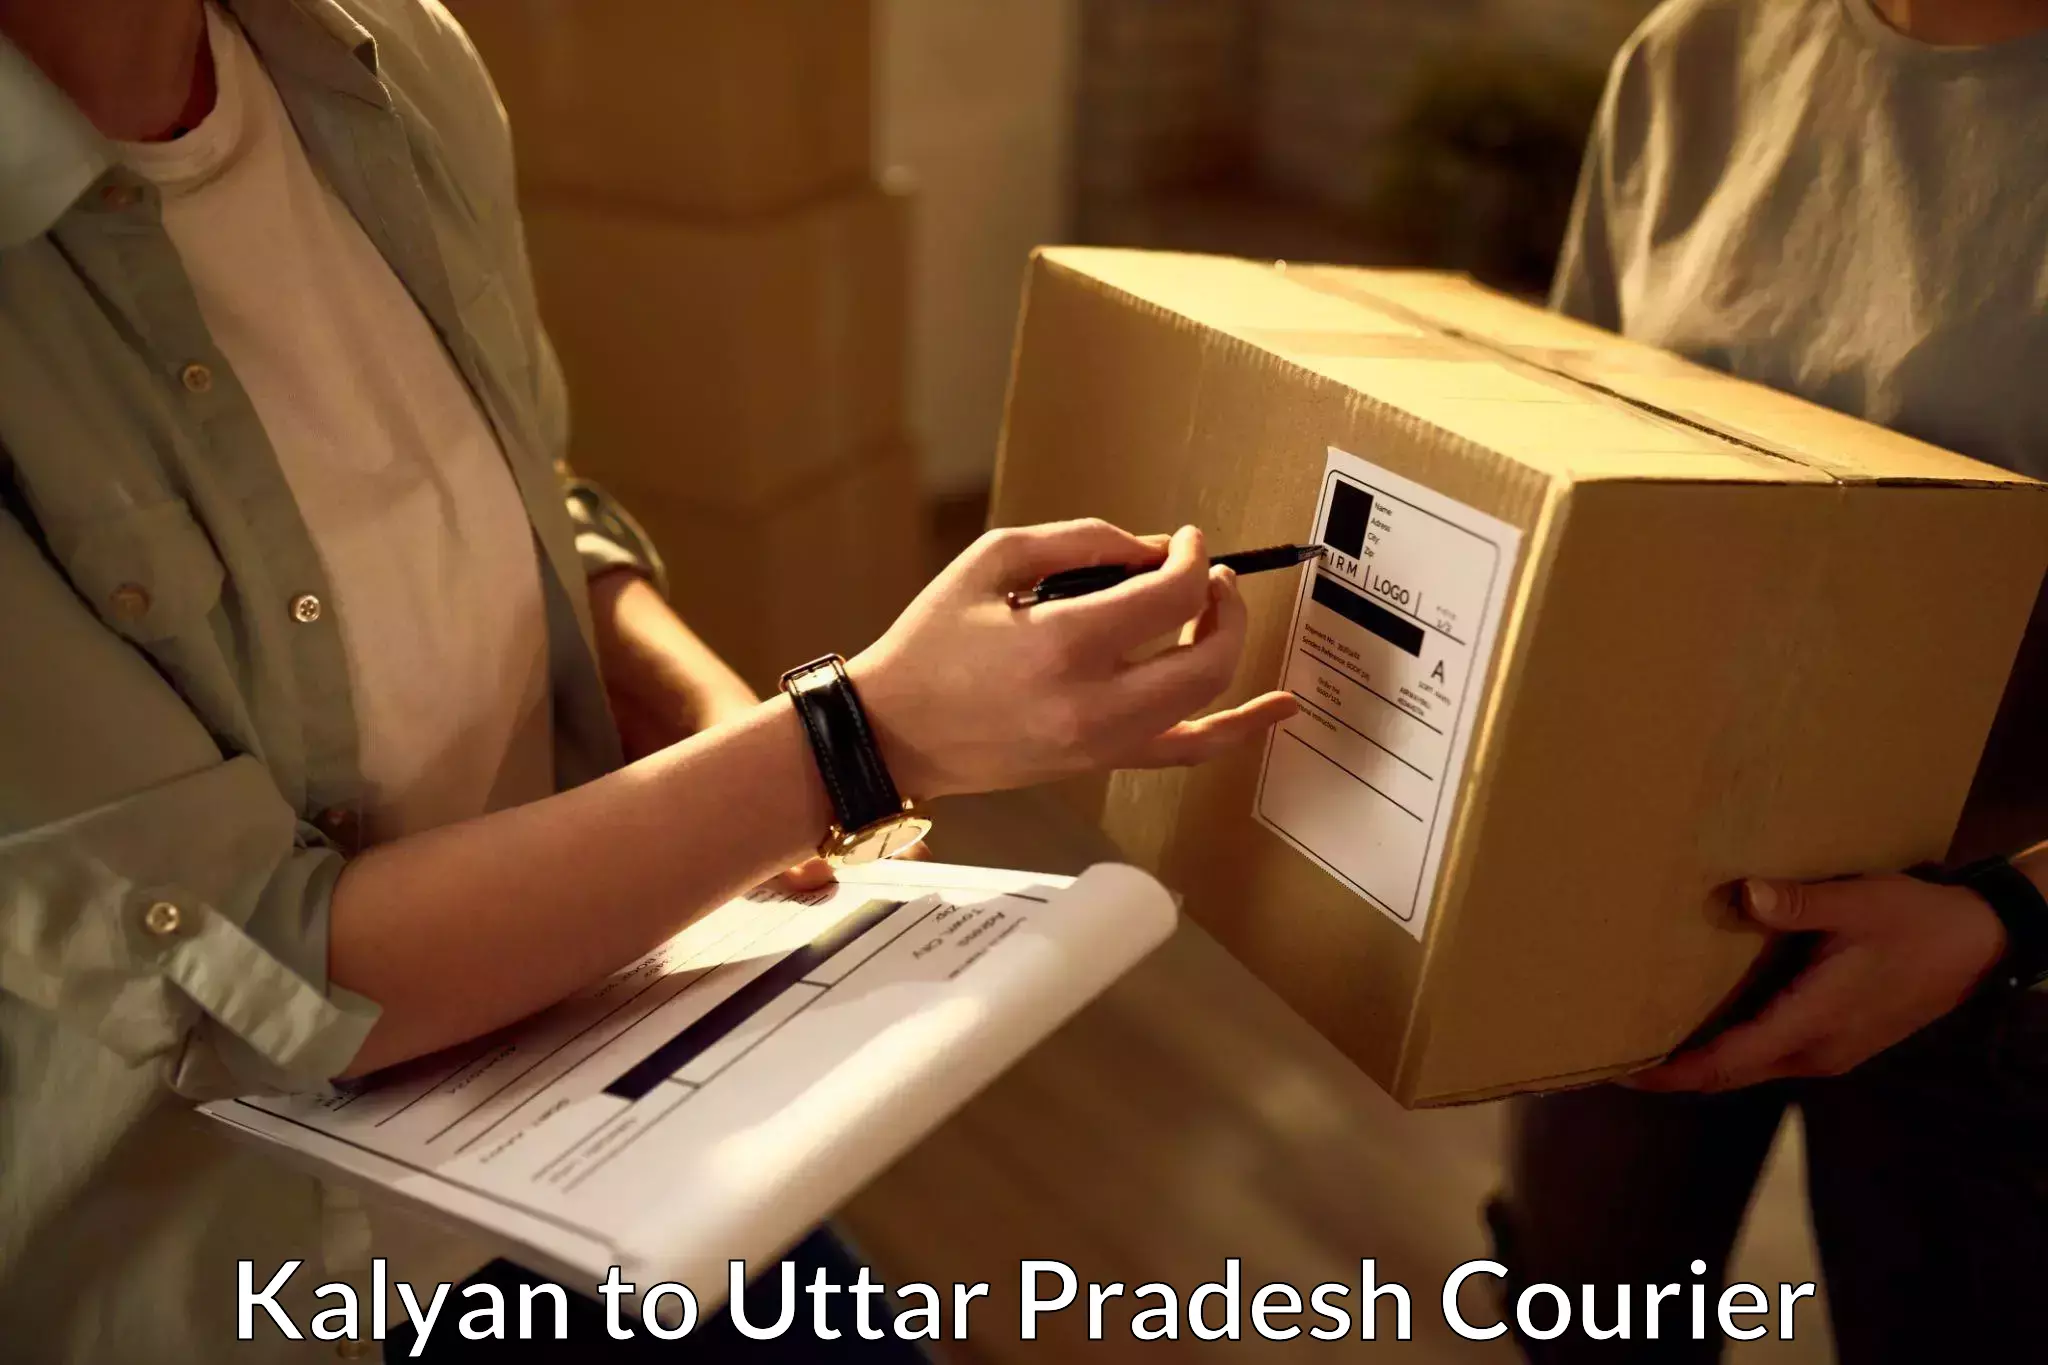 Online courier booking Kalyan to Lal Gopalganj